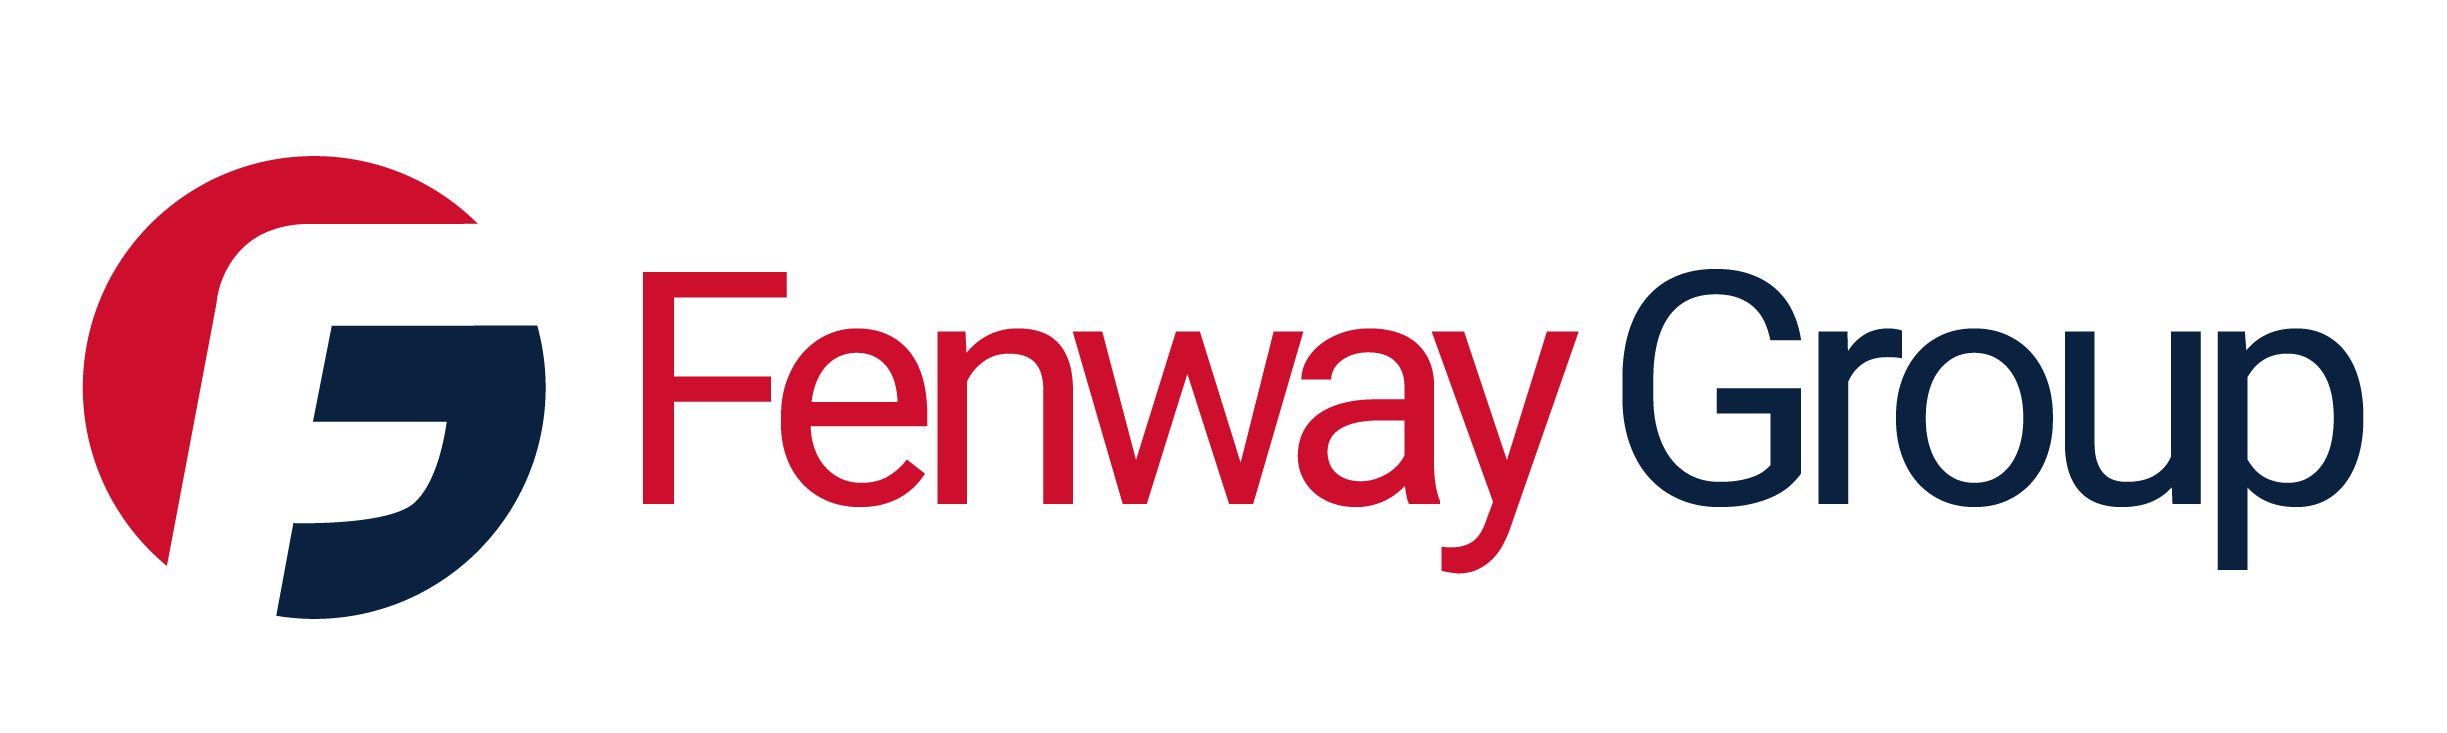 Fenway Group